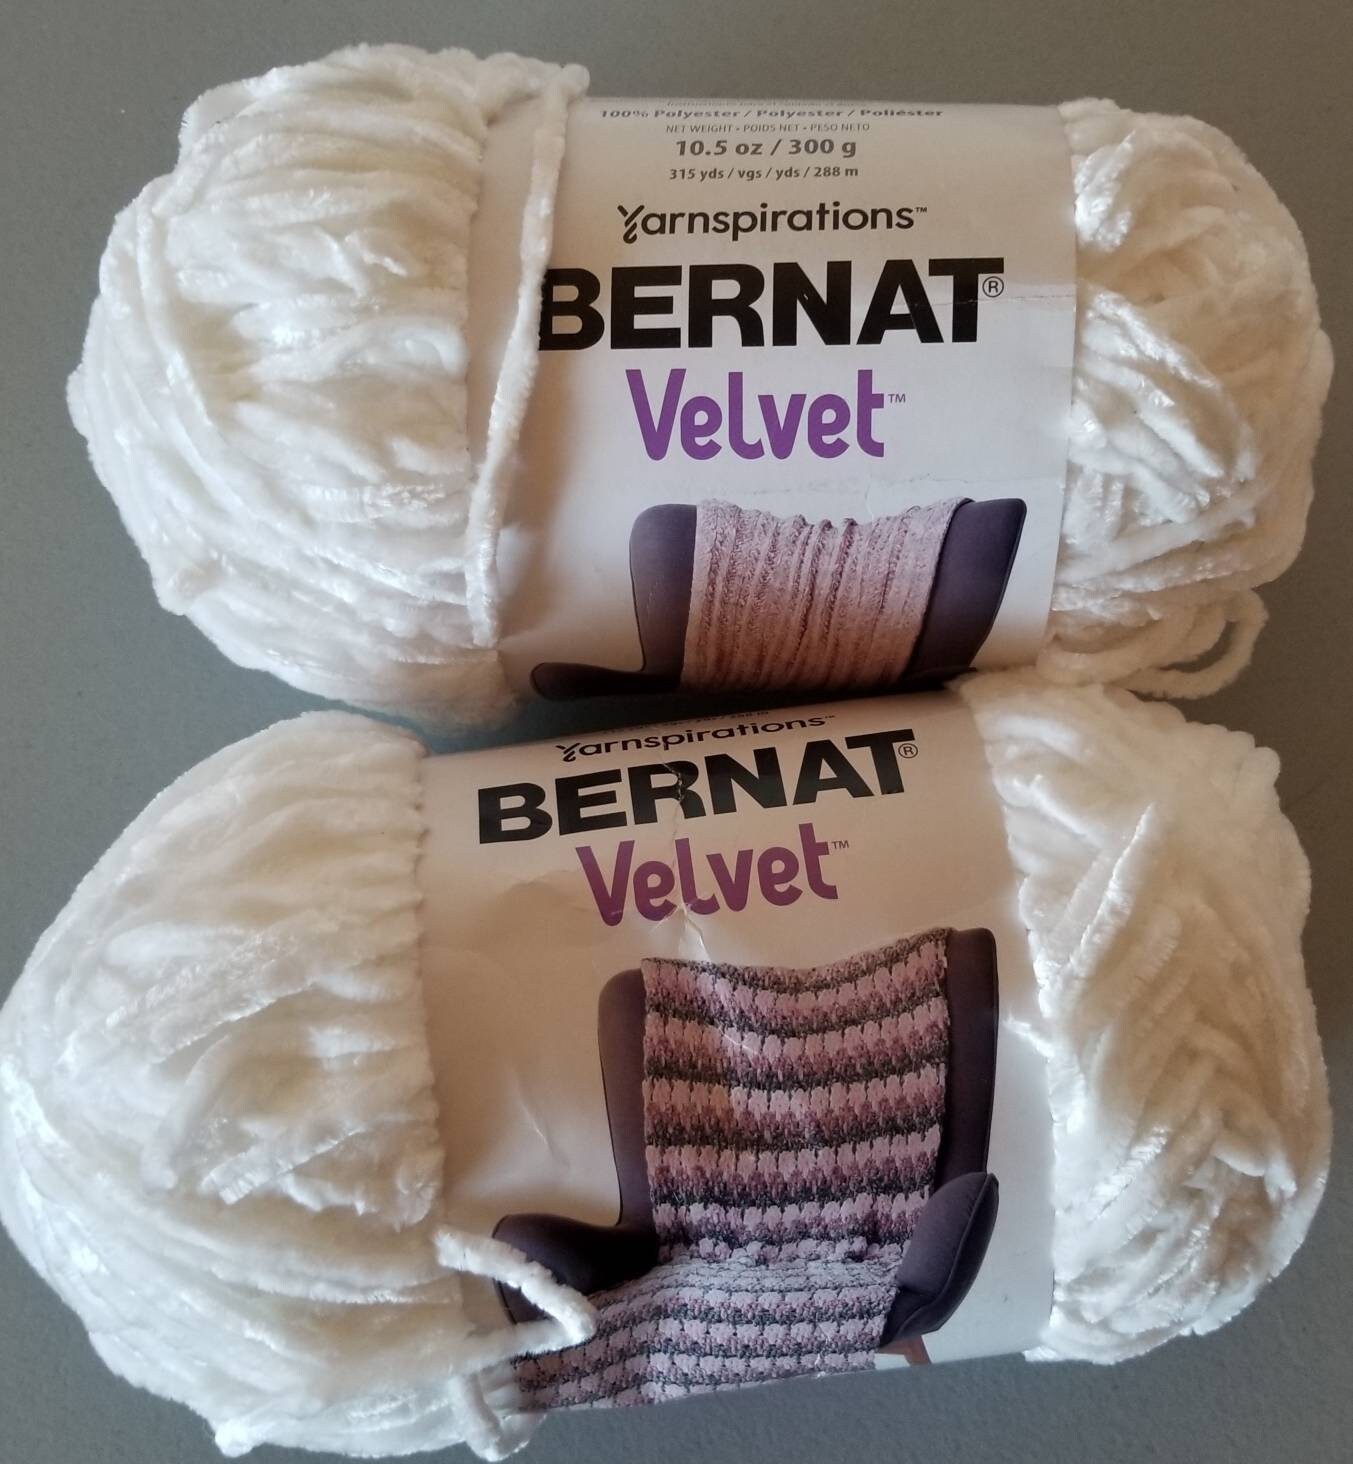 Velvet Yarn Sweet Snuggles 250g ,8.8oz per Skein 